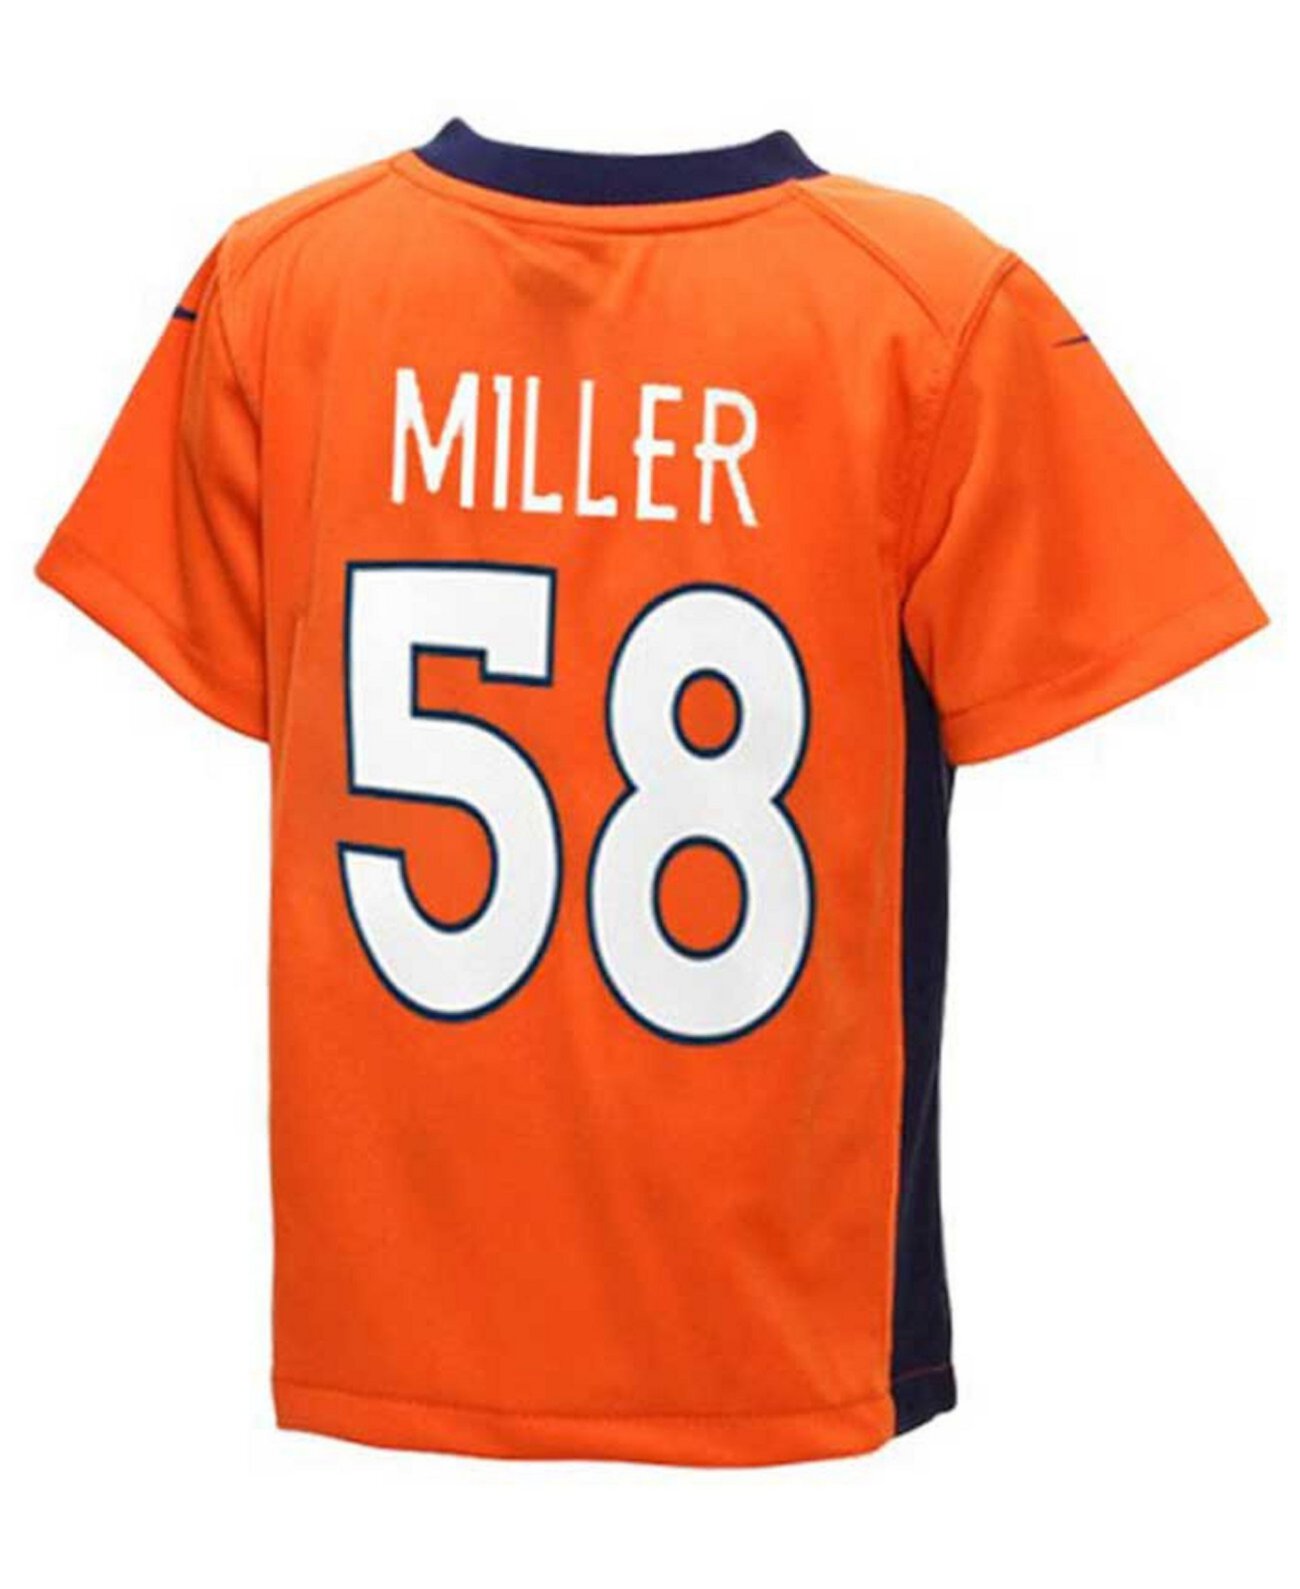 Джерси Von Miller Denver Broncos Game, для мальчиков младенческого возраста (12-24 месяца) Nike